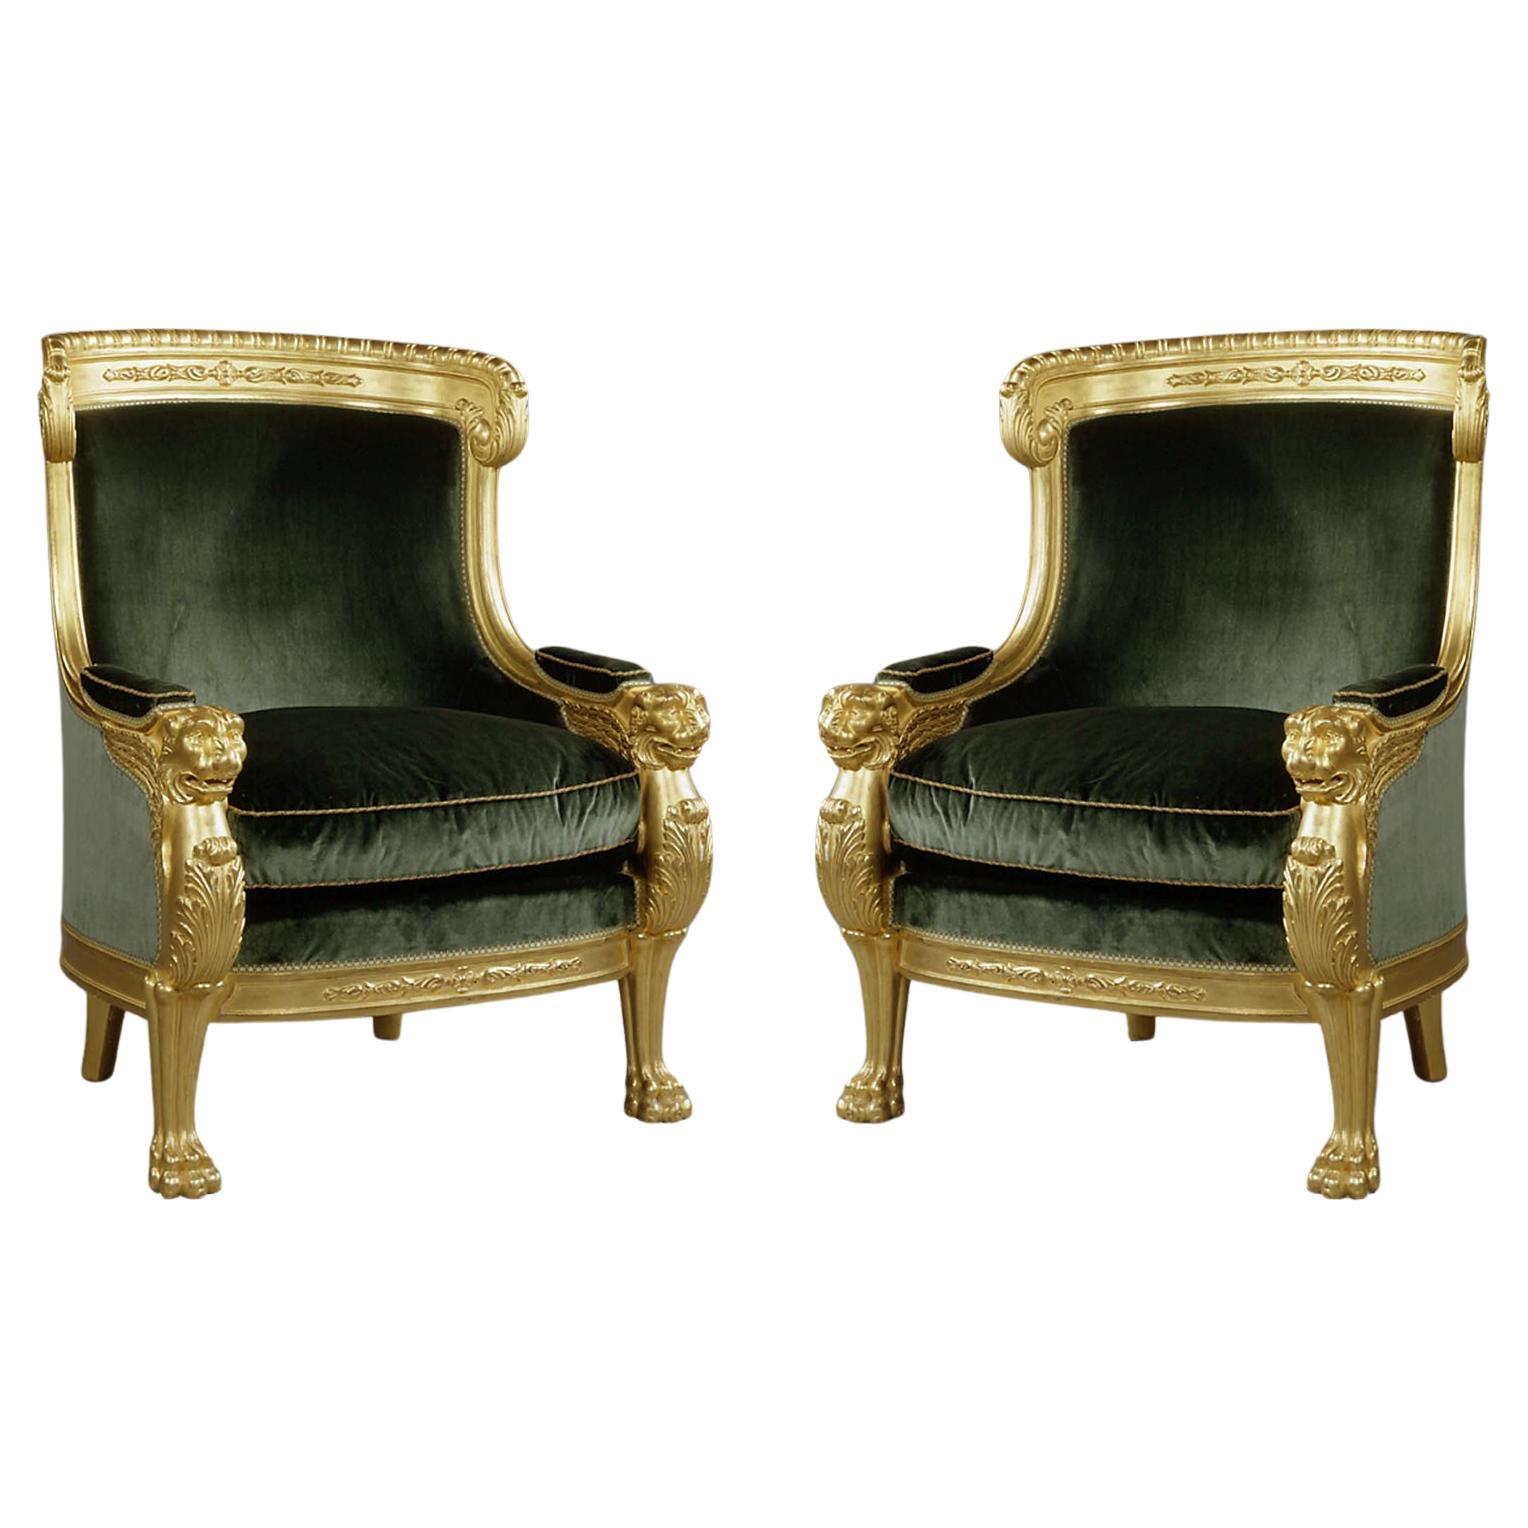 Paire de chaises tubulaires de style Empire en bois doré sculpté avec tapisserie en velours vert.